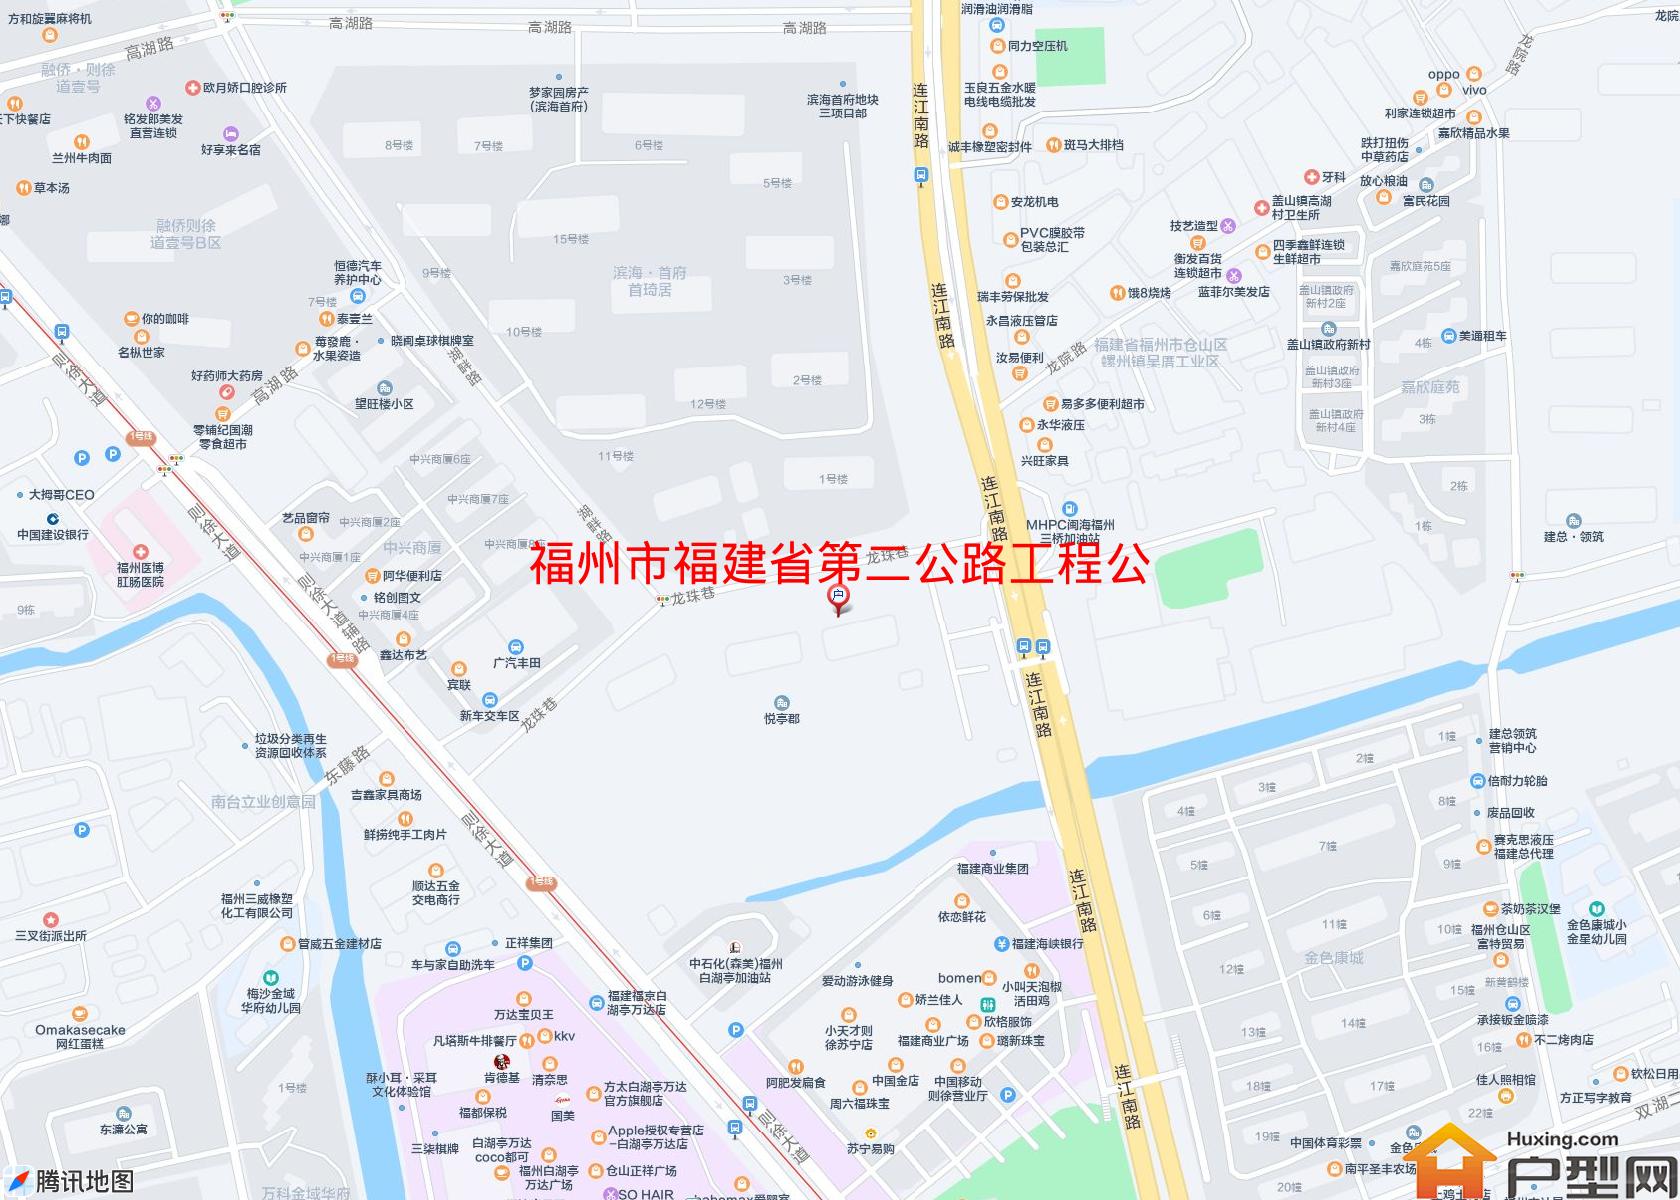 福建省第二公路工程公司宿舍小区 - 户型网